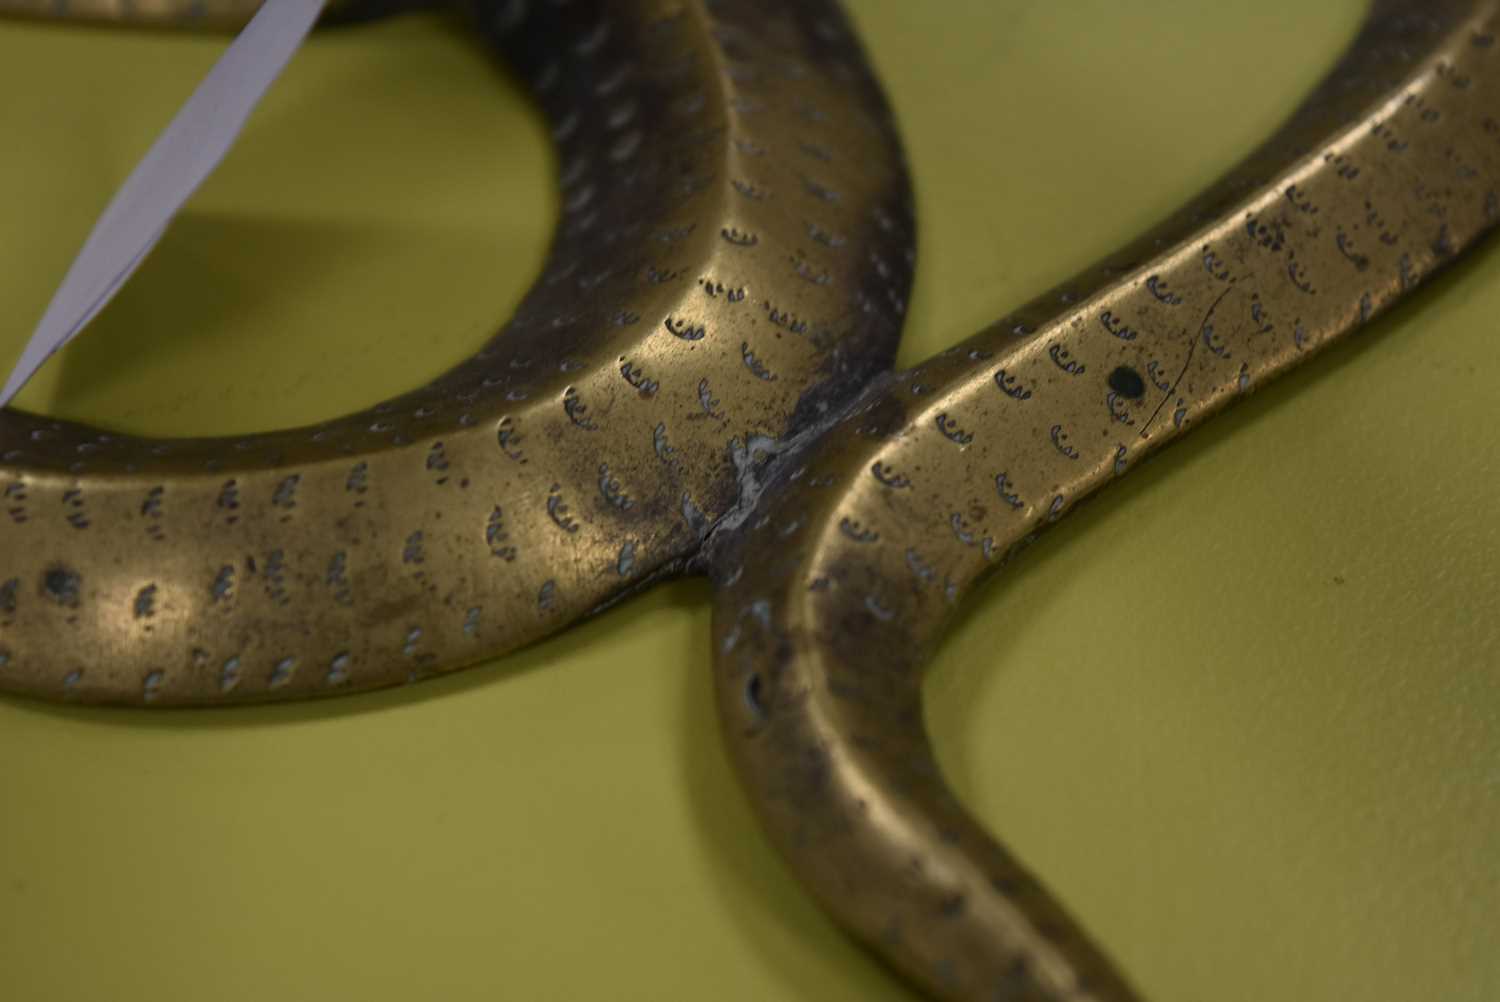 A Benares brass figure of three cobras, - Image 2 of 3